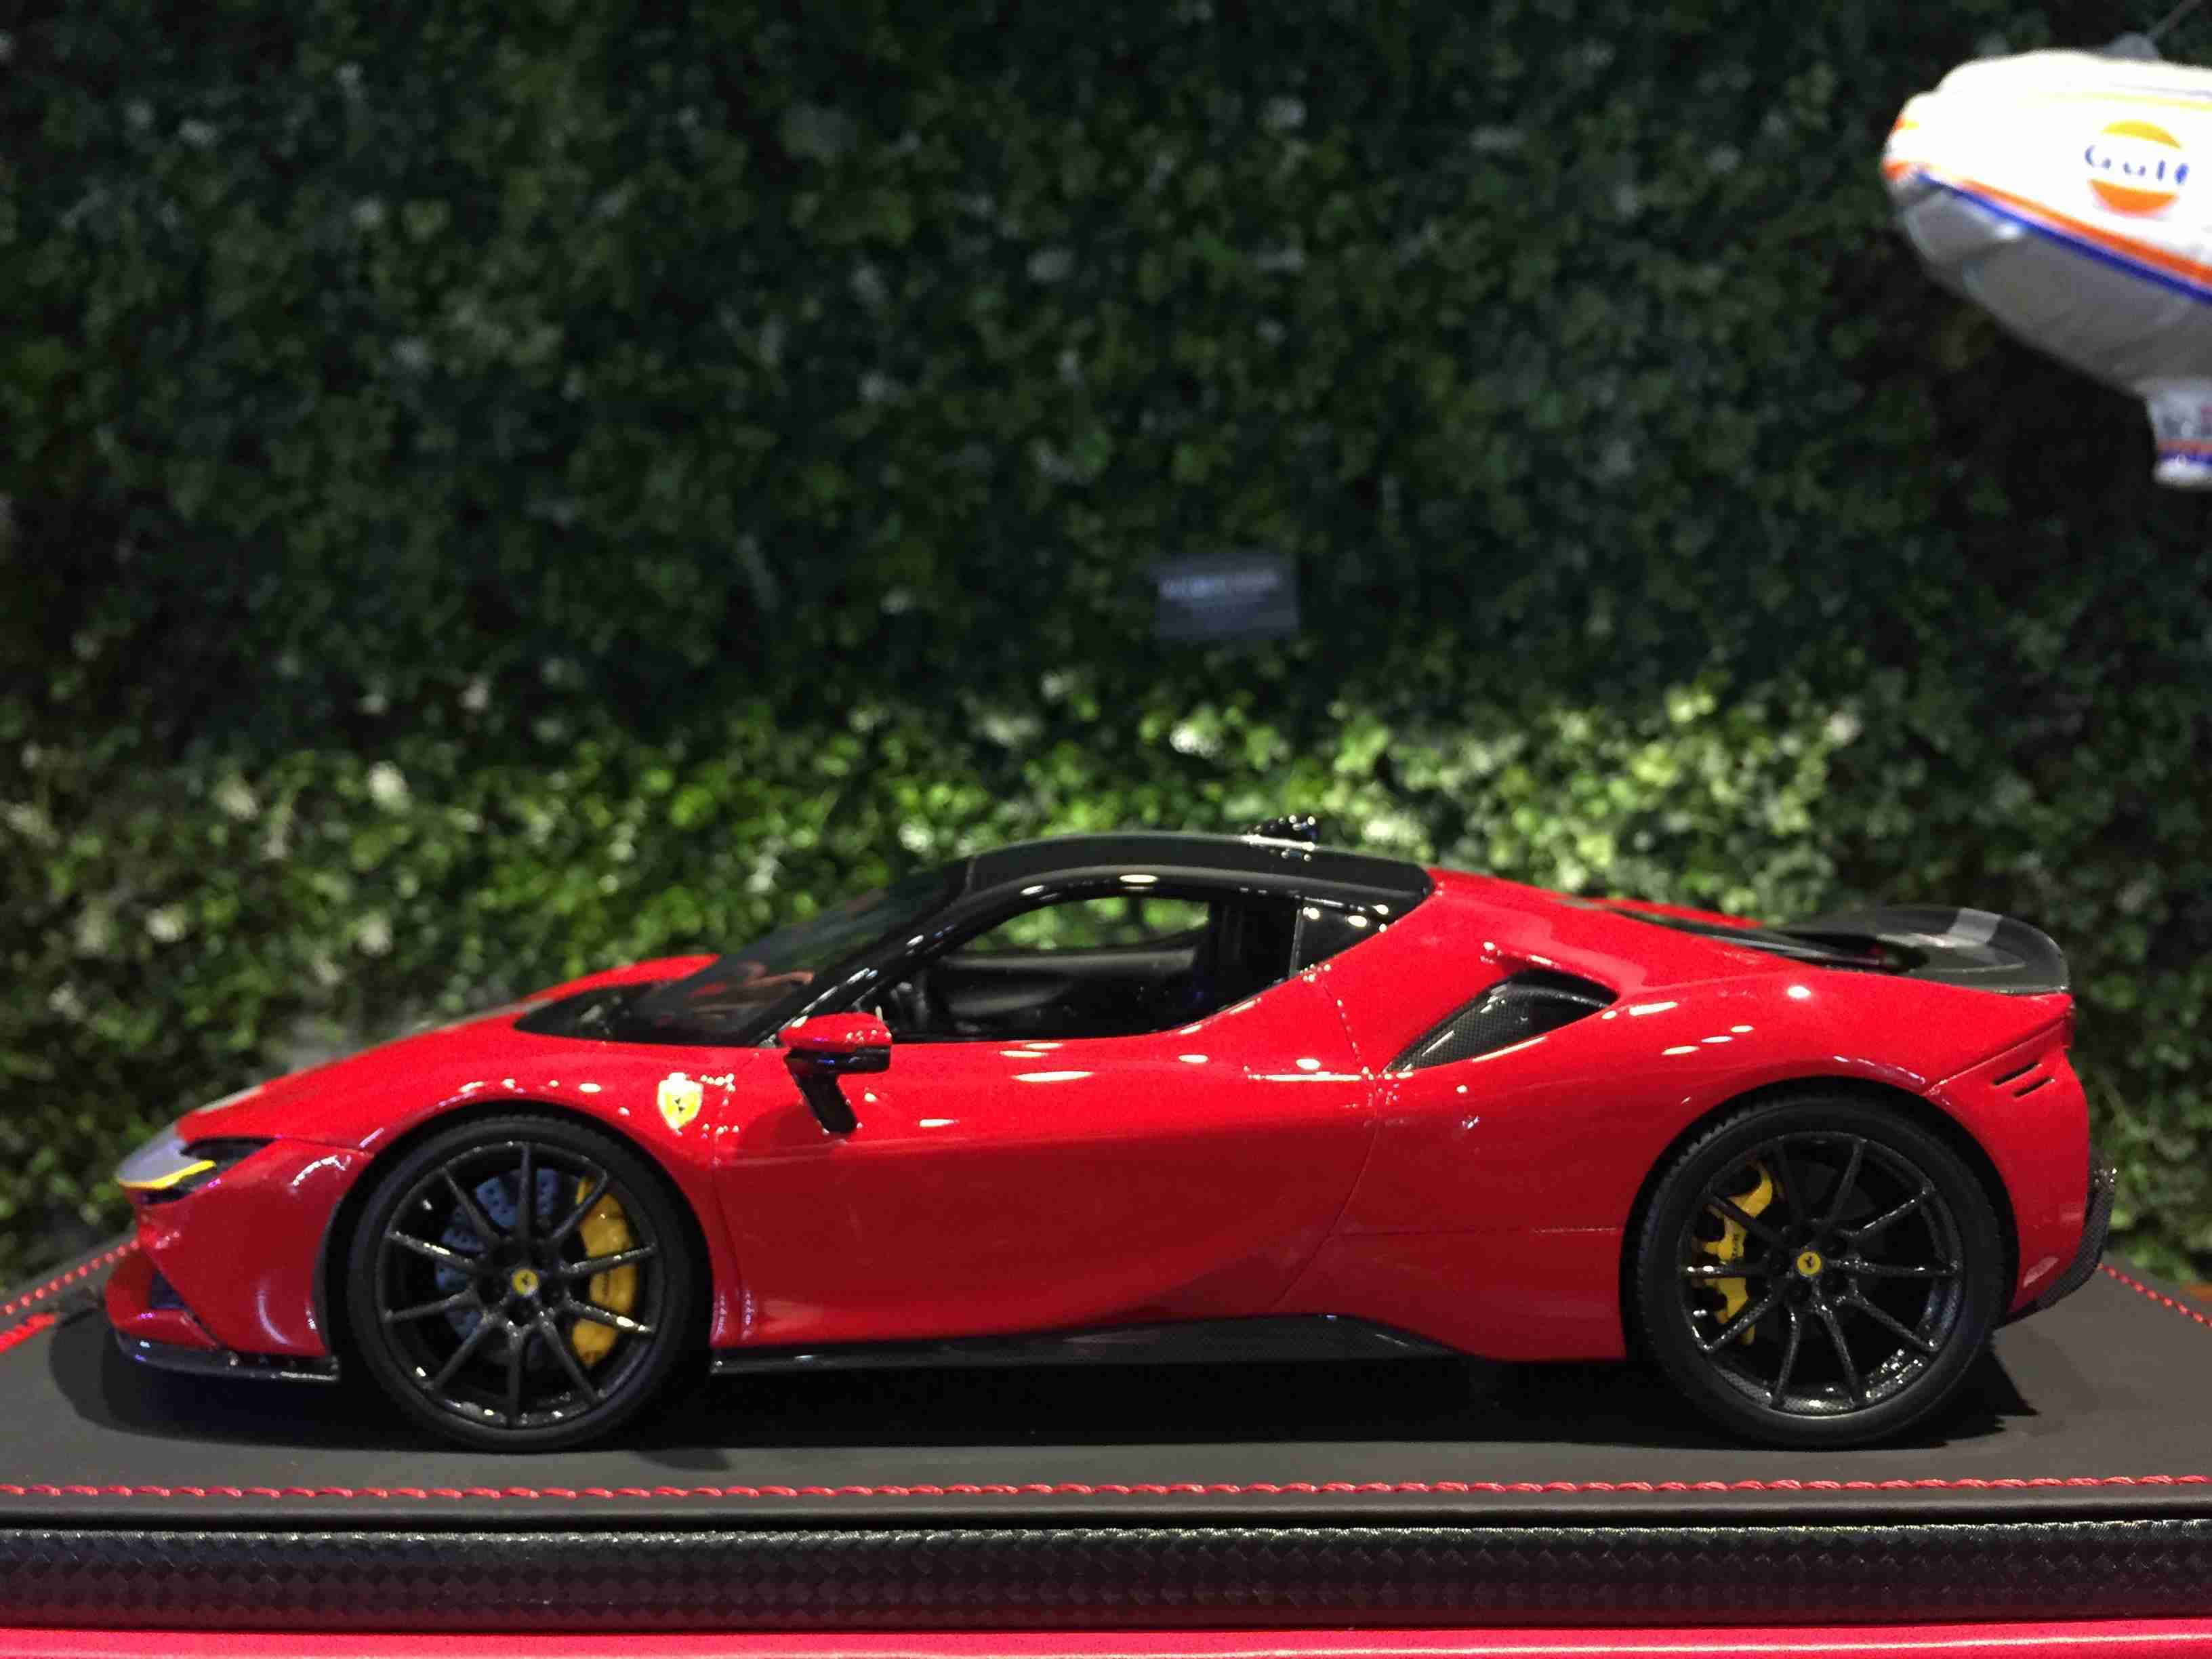 1/18 MR Ferrari SF90 Stradale Rosso Corsa FE028D【MGM】